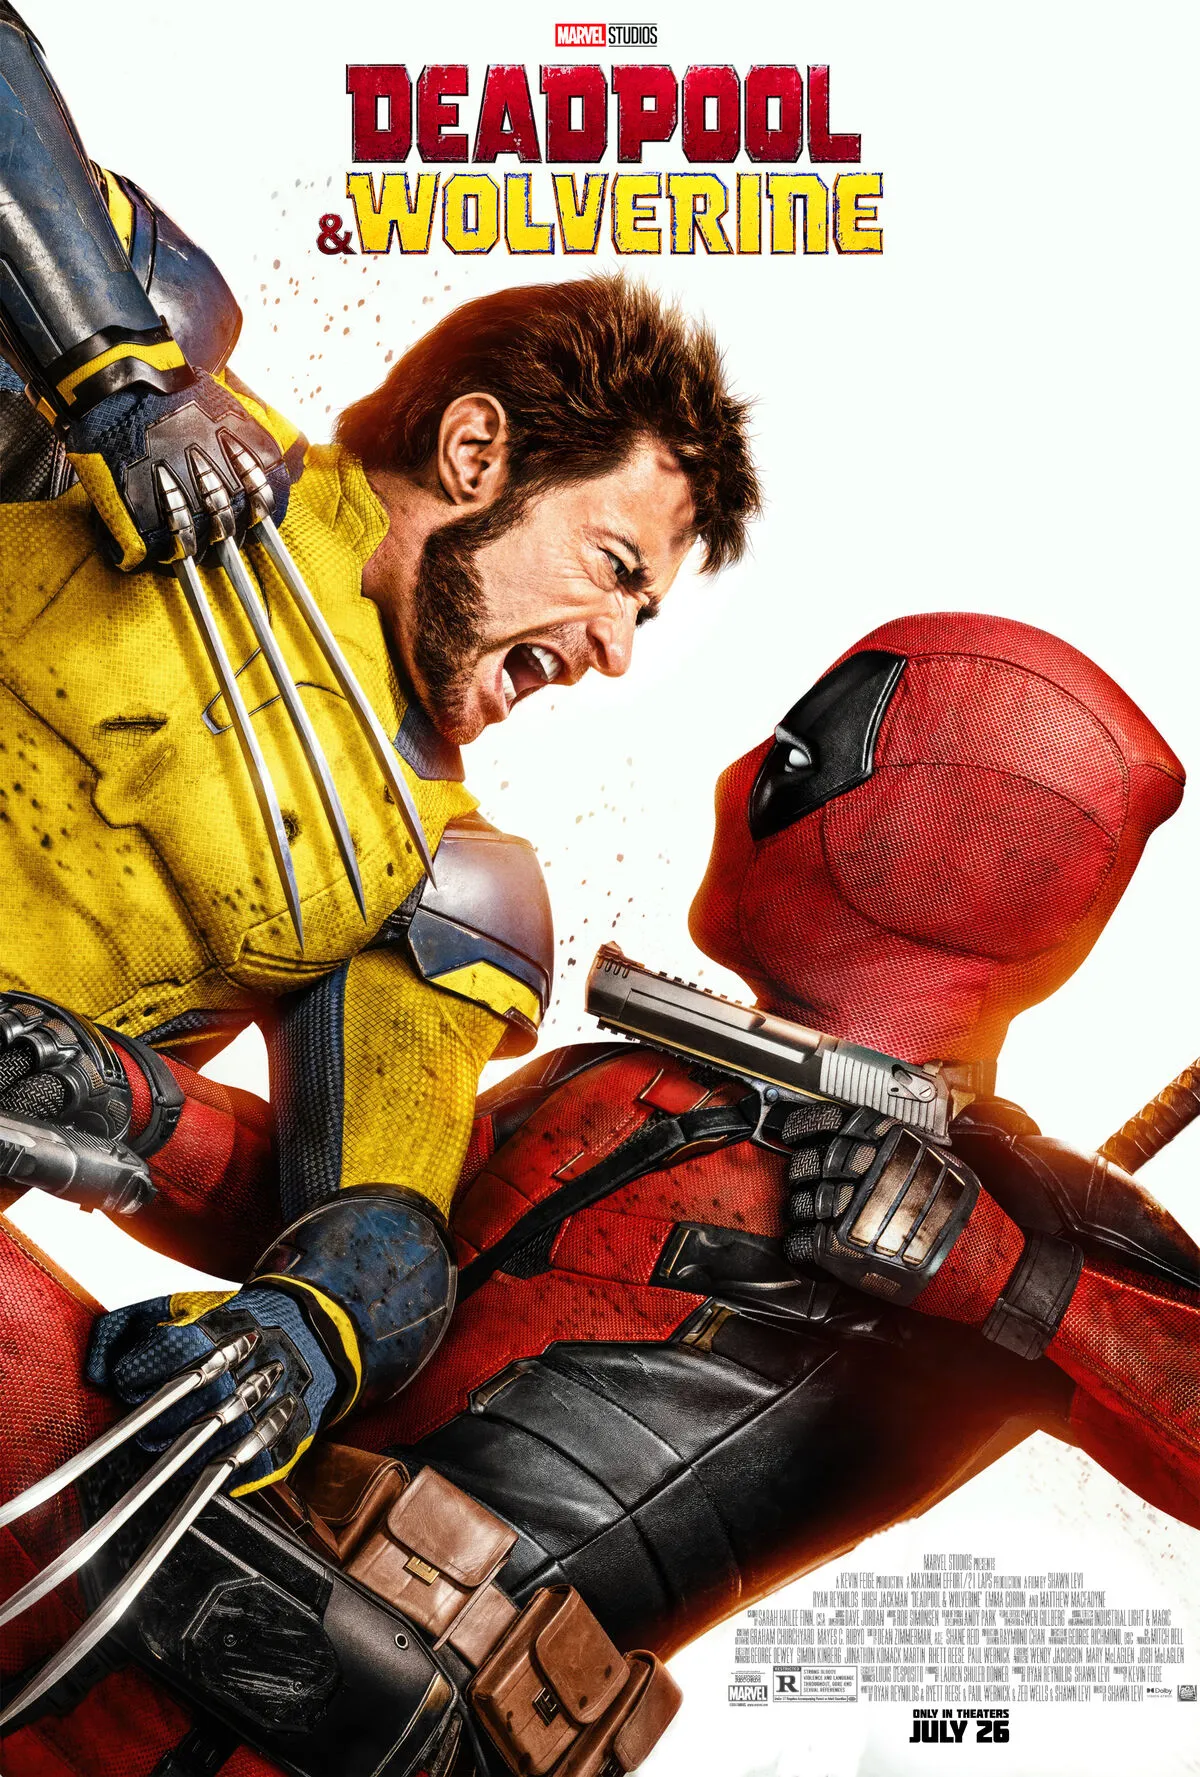 Deadpool & Wolverine (2024) MP4 Movie